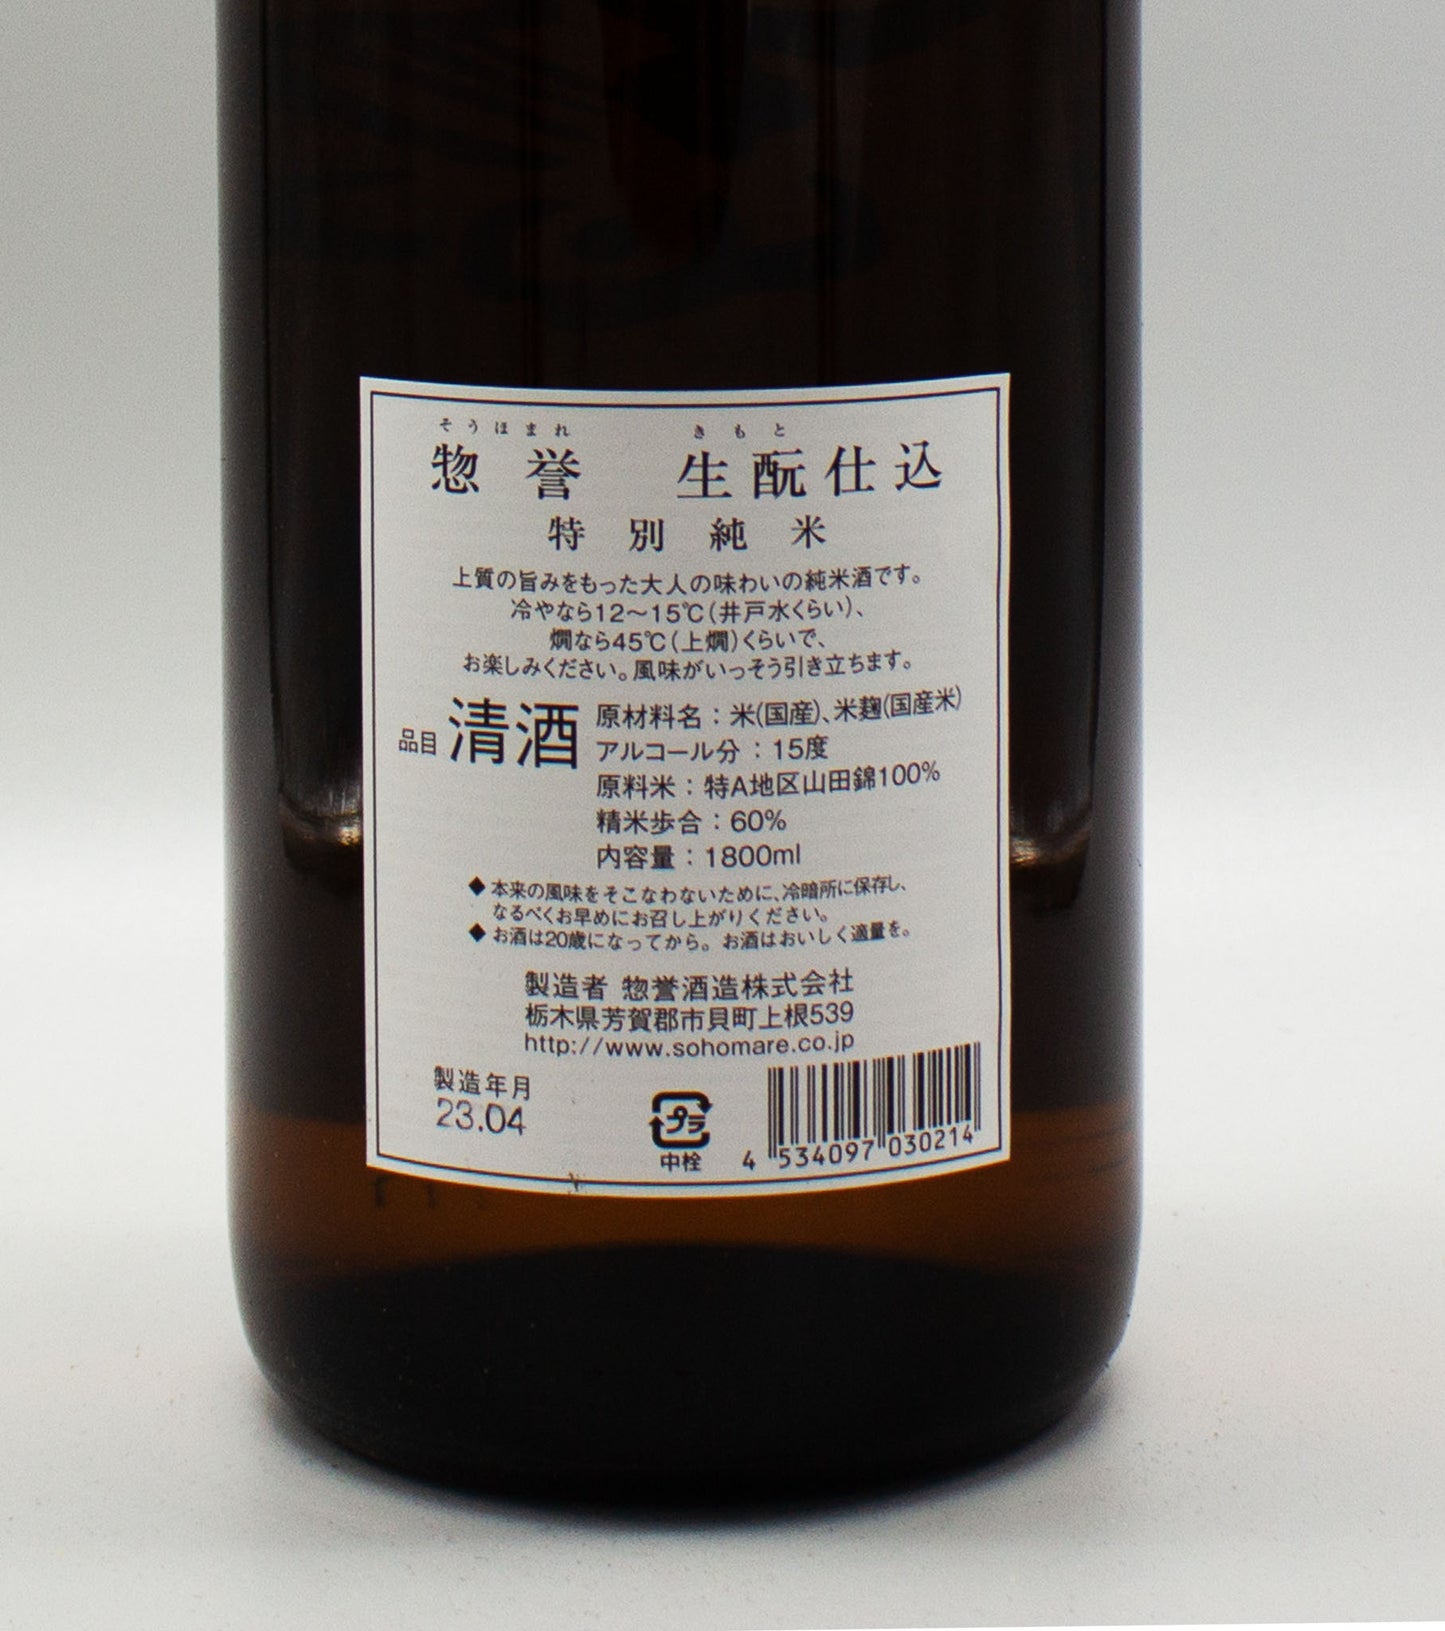 [日本酒] 惣誉酒造 惣誉 生もと仕込 特別純米 1800ml